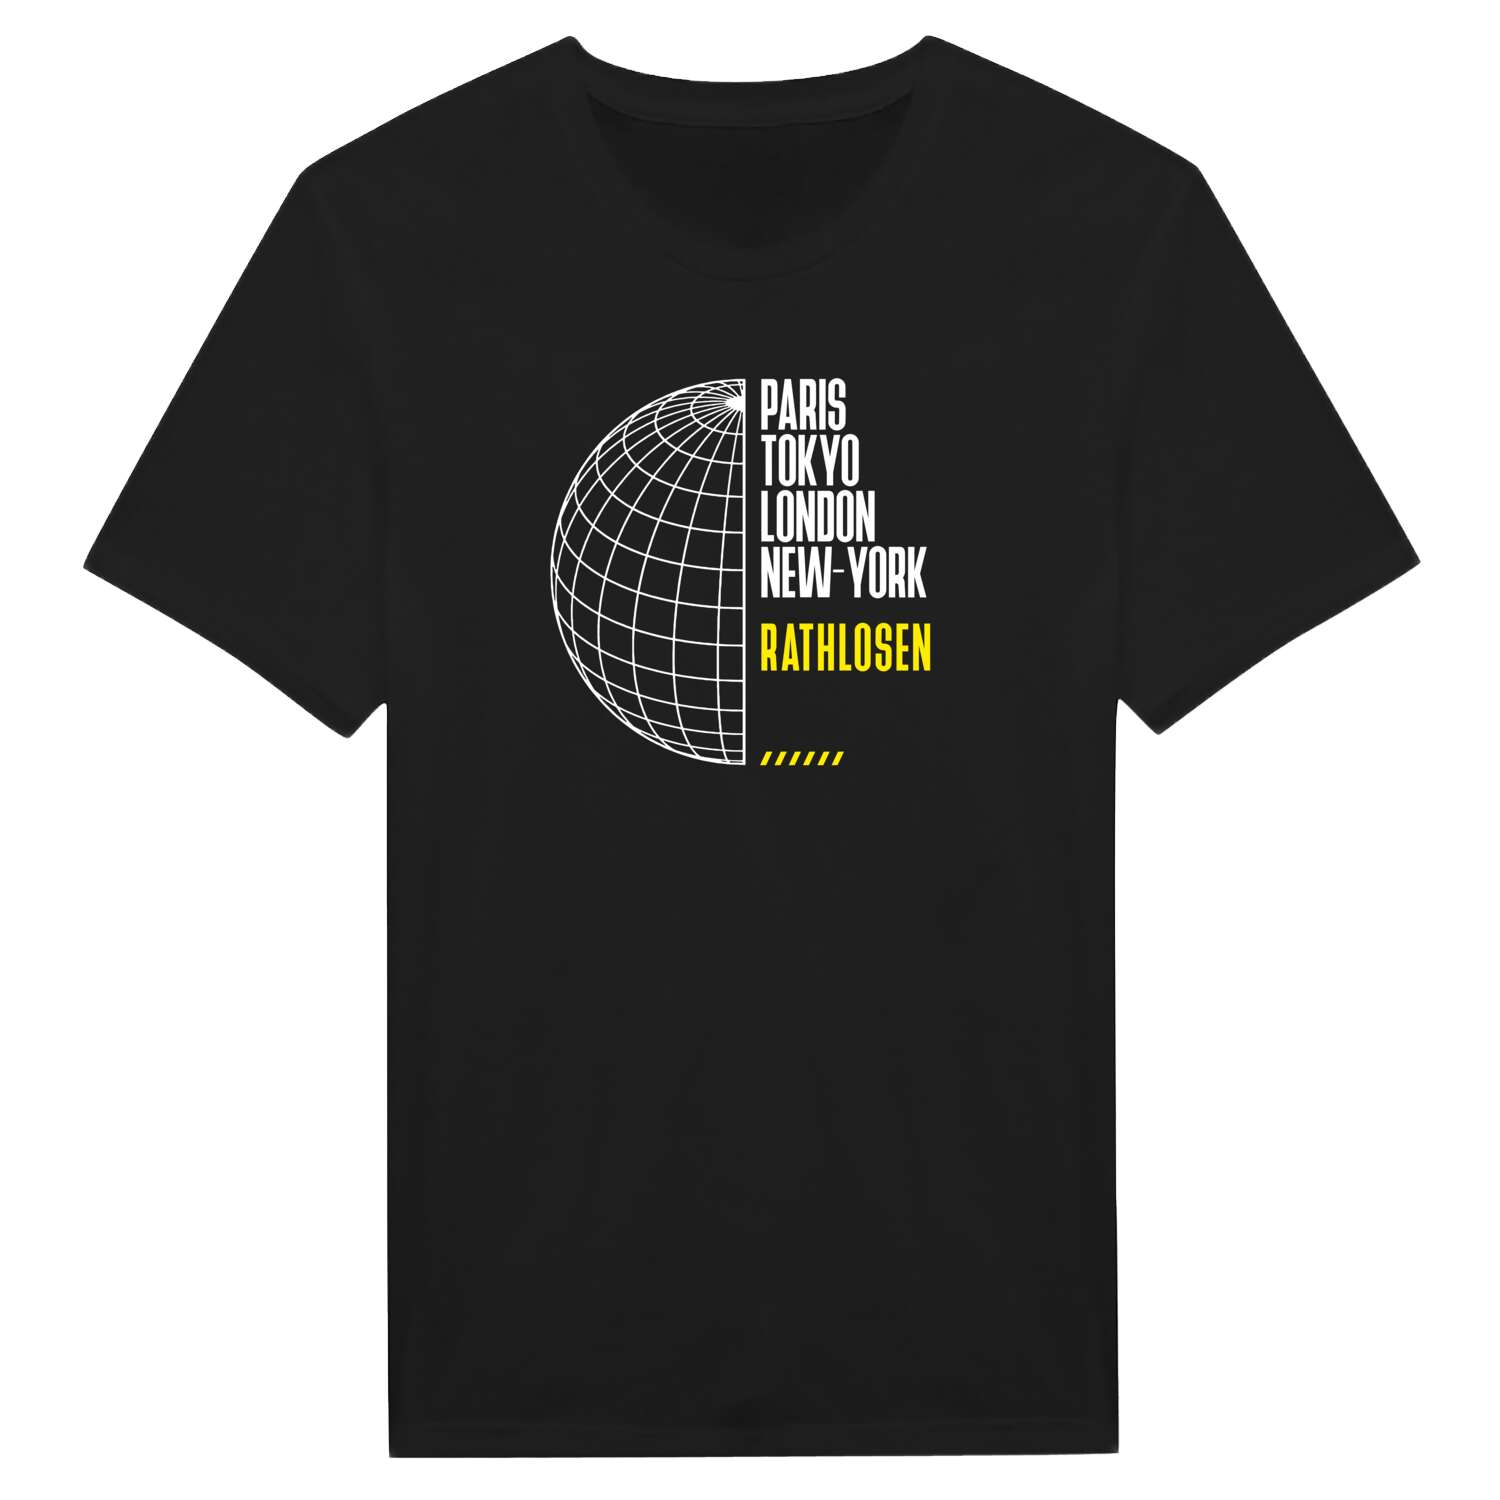 Rathlosen T-Shirt »Paris Tokyo London«